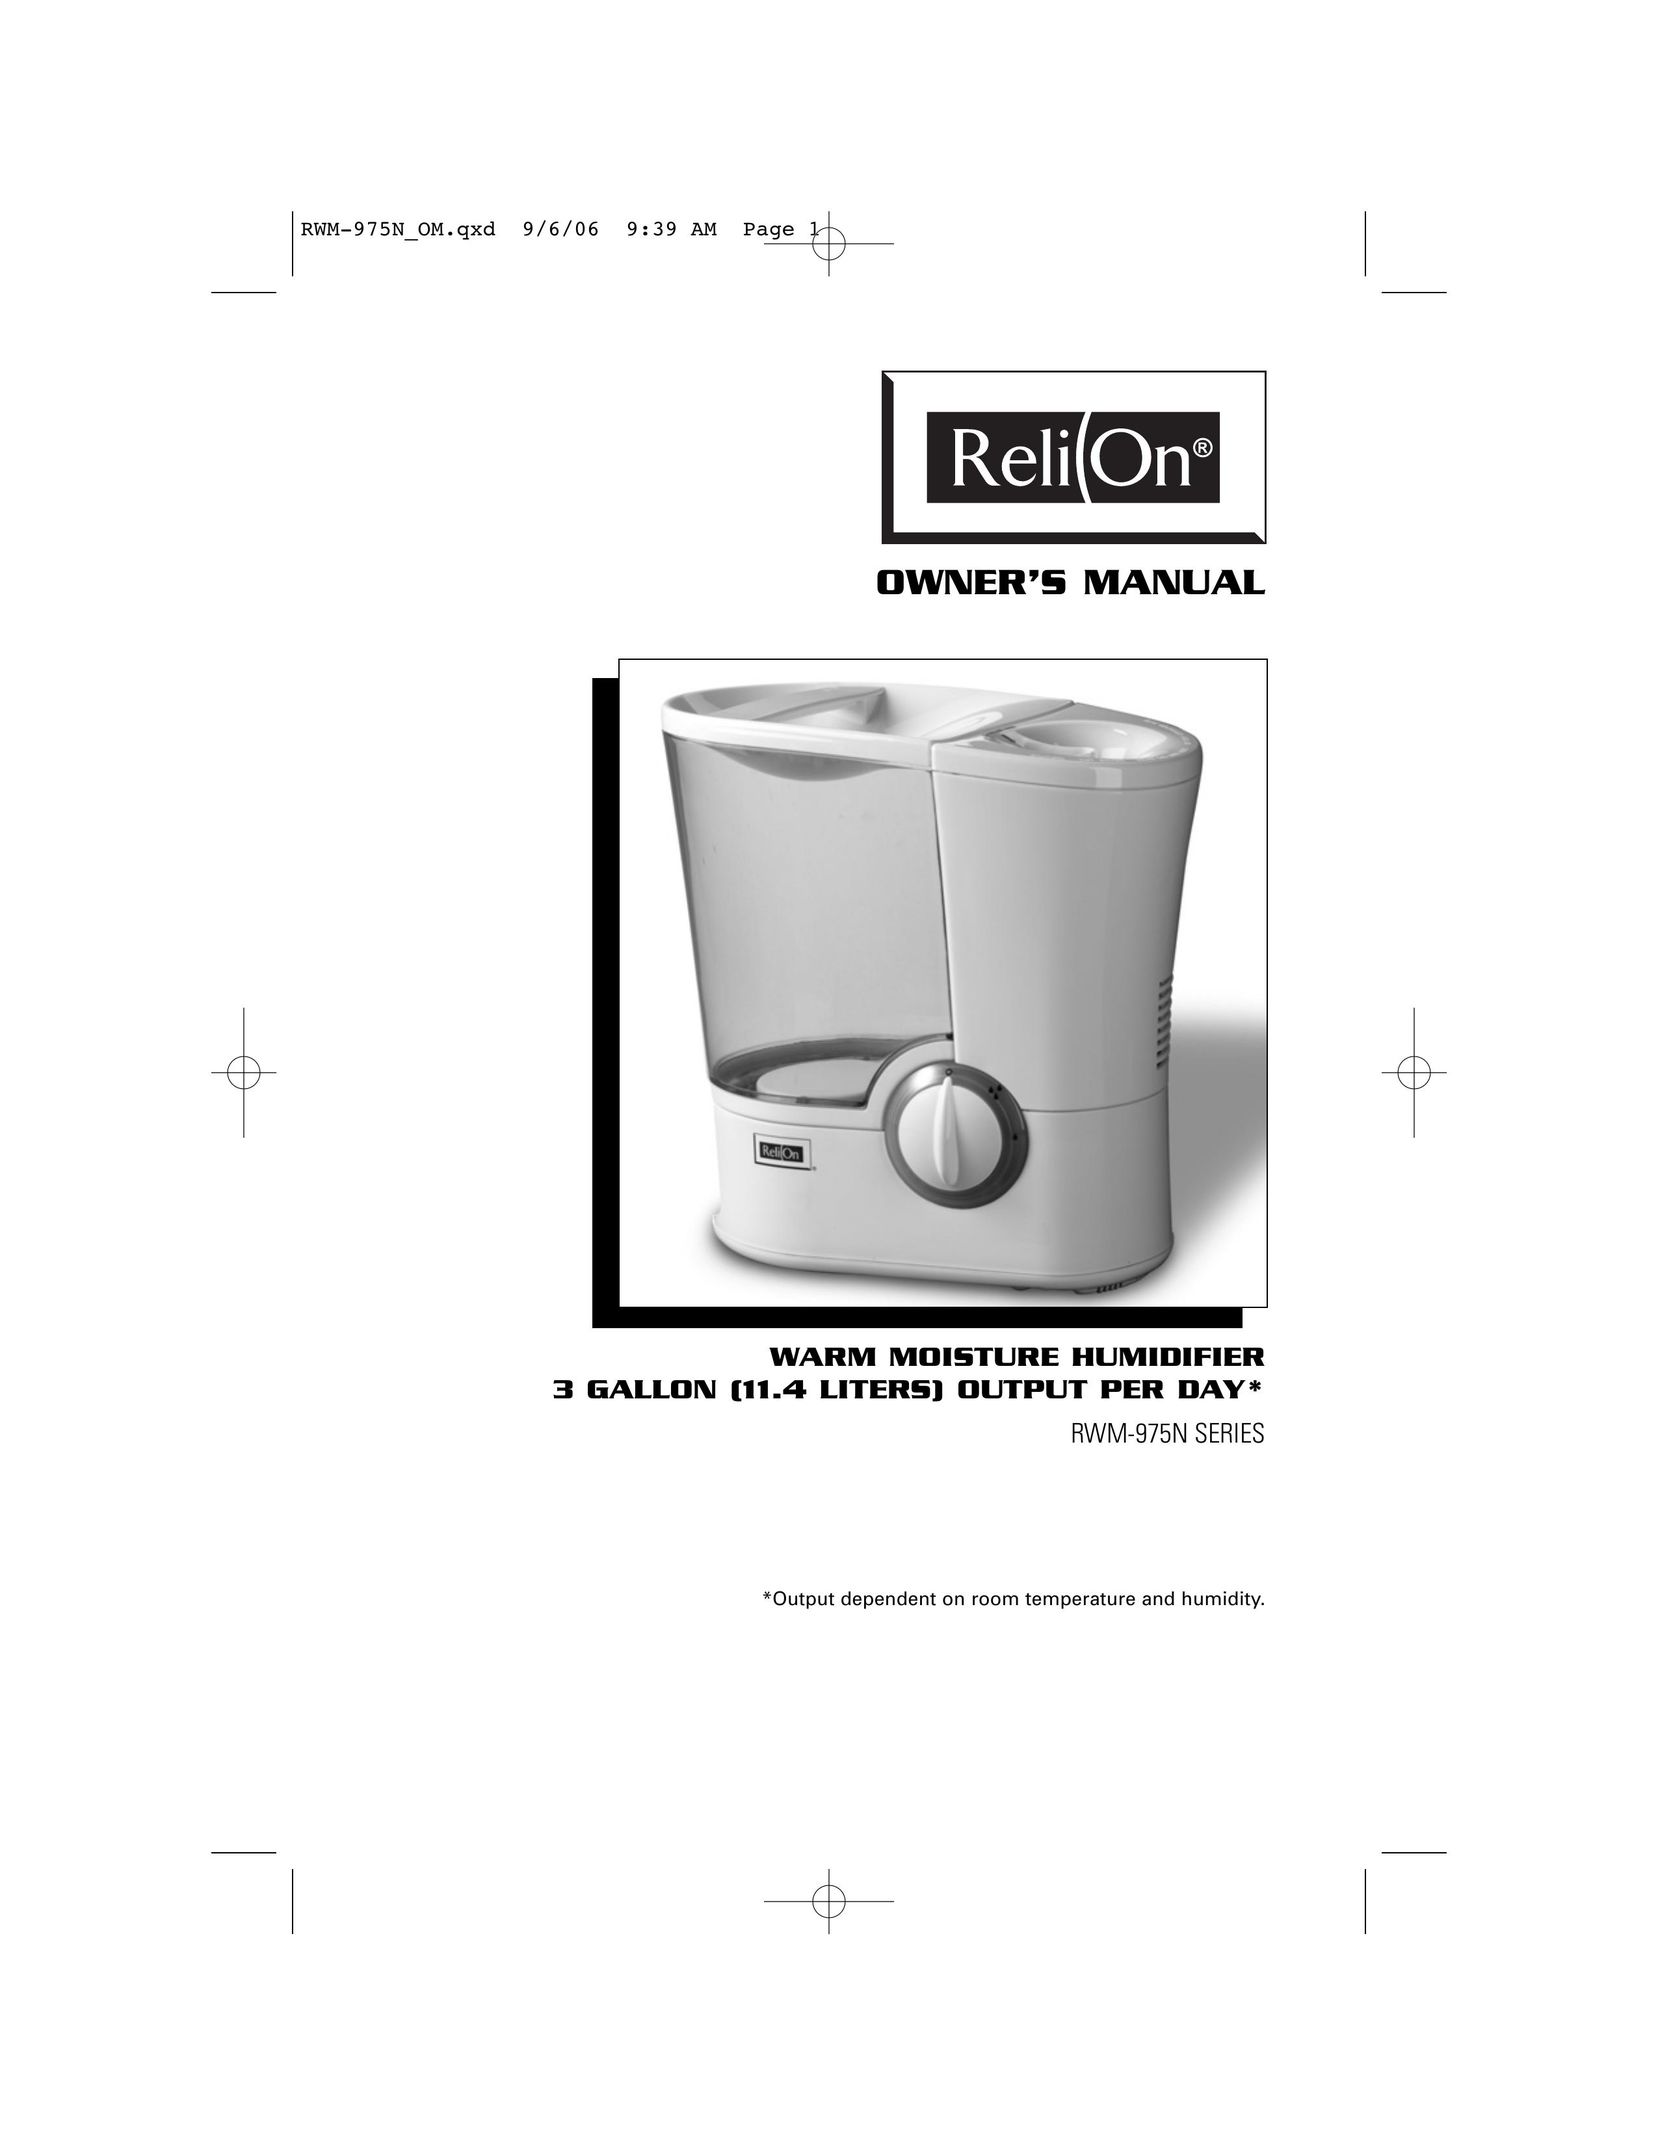 ReliOn RWM-975N Humidifier User Manual